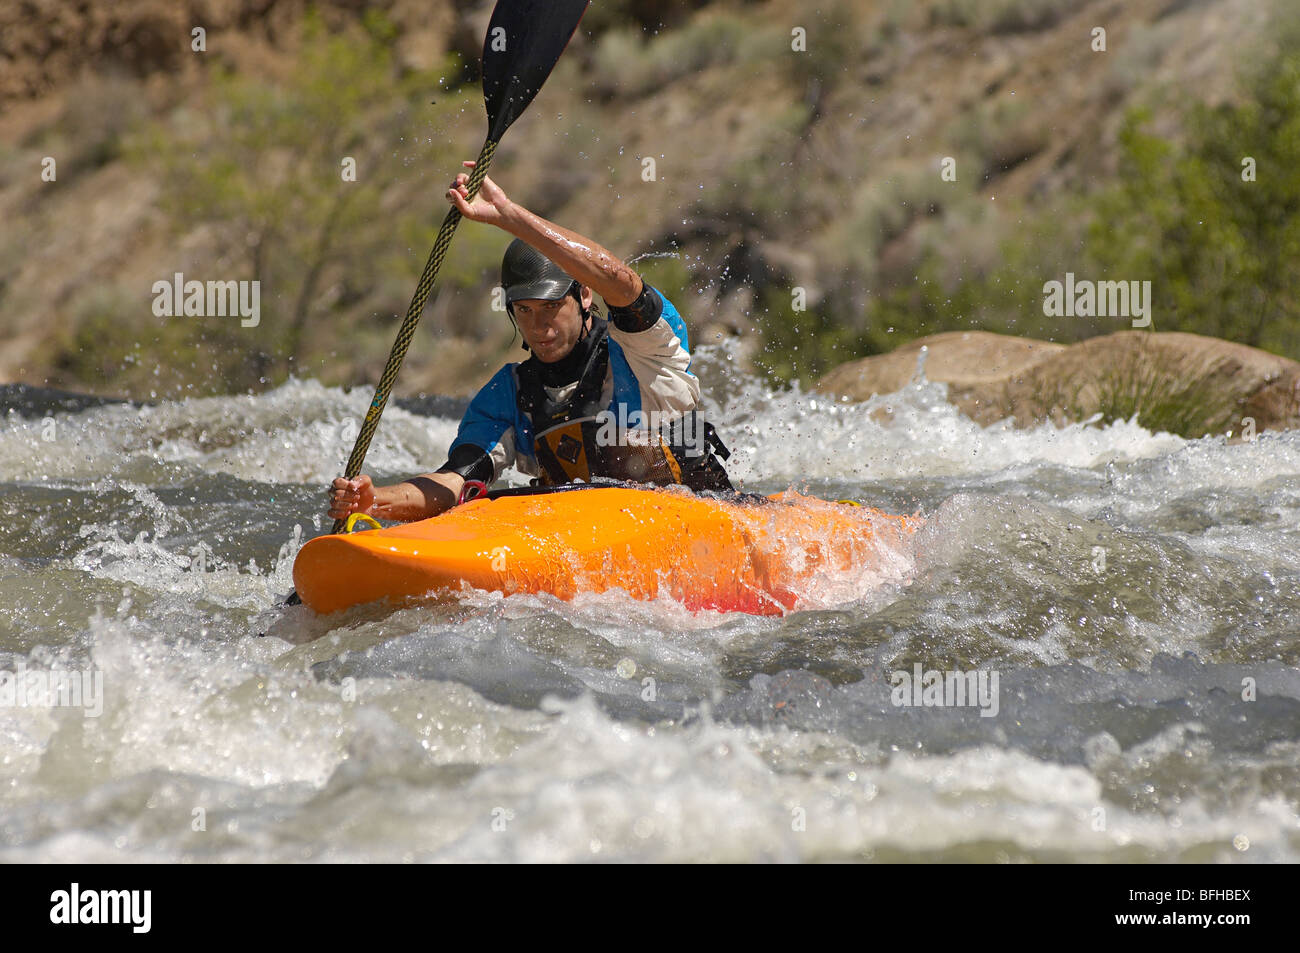 Man kayaking on mountain river Stock Photo